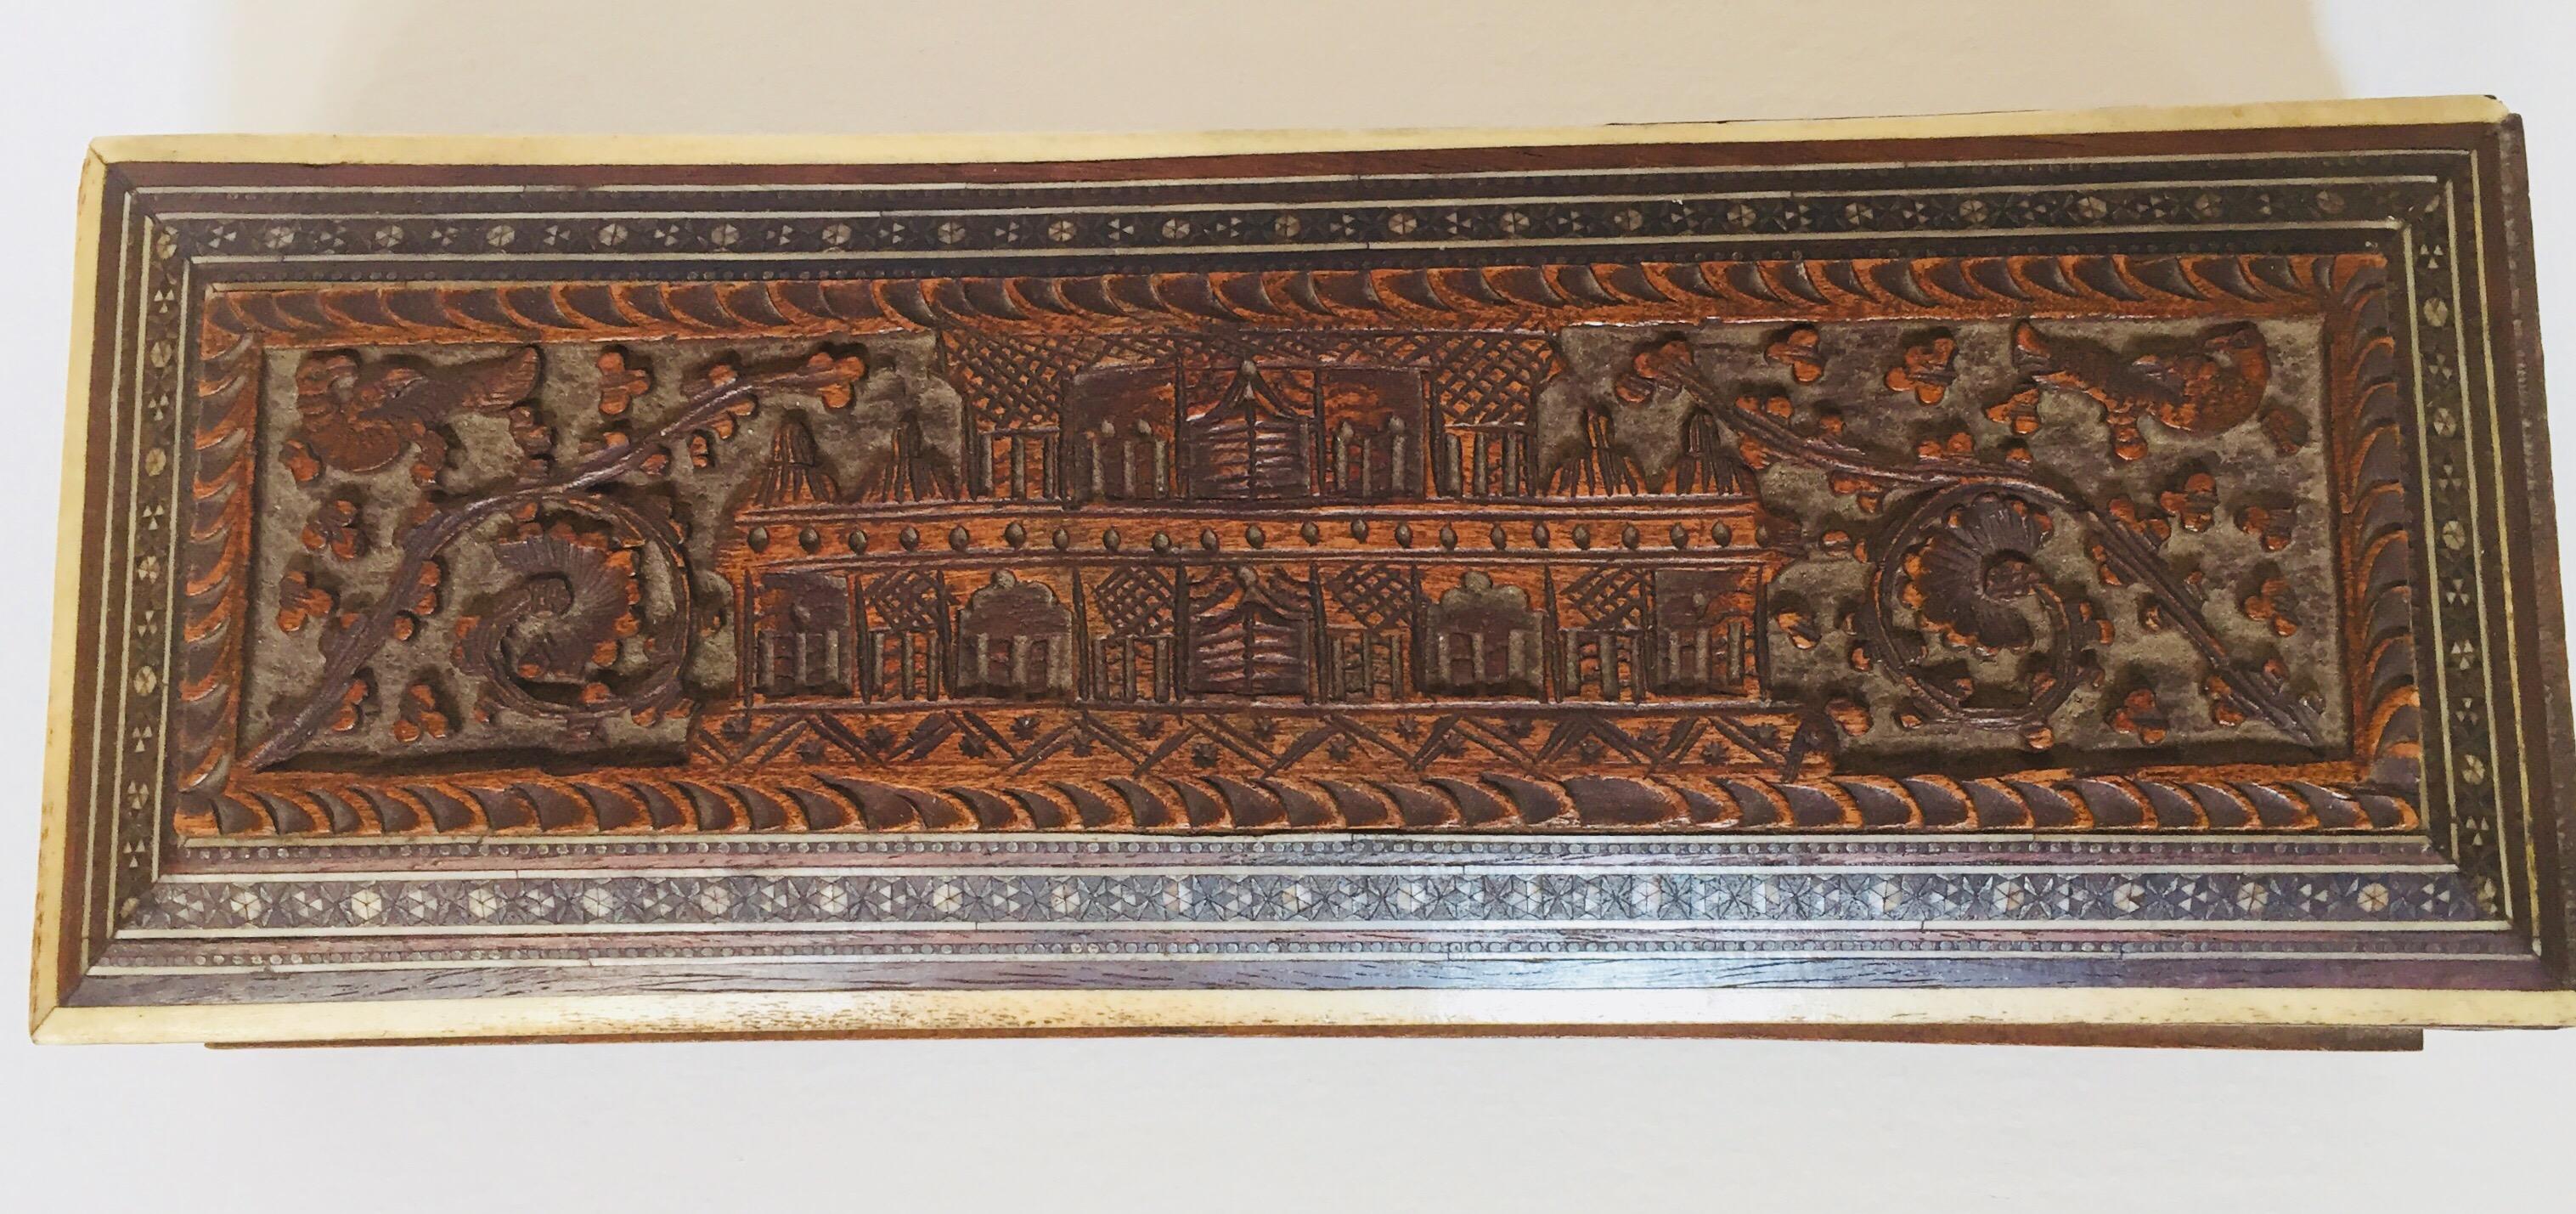 Boîte à bijoux ancienne en bois sculpté à la main et incrusté.
Joli plumier moghol indien réalisé à la main en micro-mosaïque Sadeli très fine, avec un motif architectural de palais moghol sculpté de façon complexe sur le dessus.
Exquis coffret à